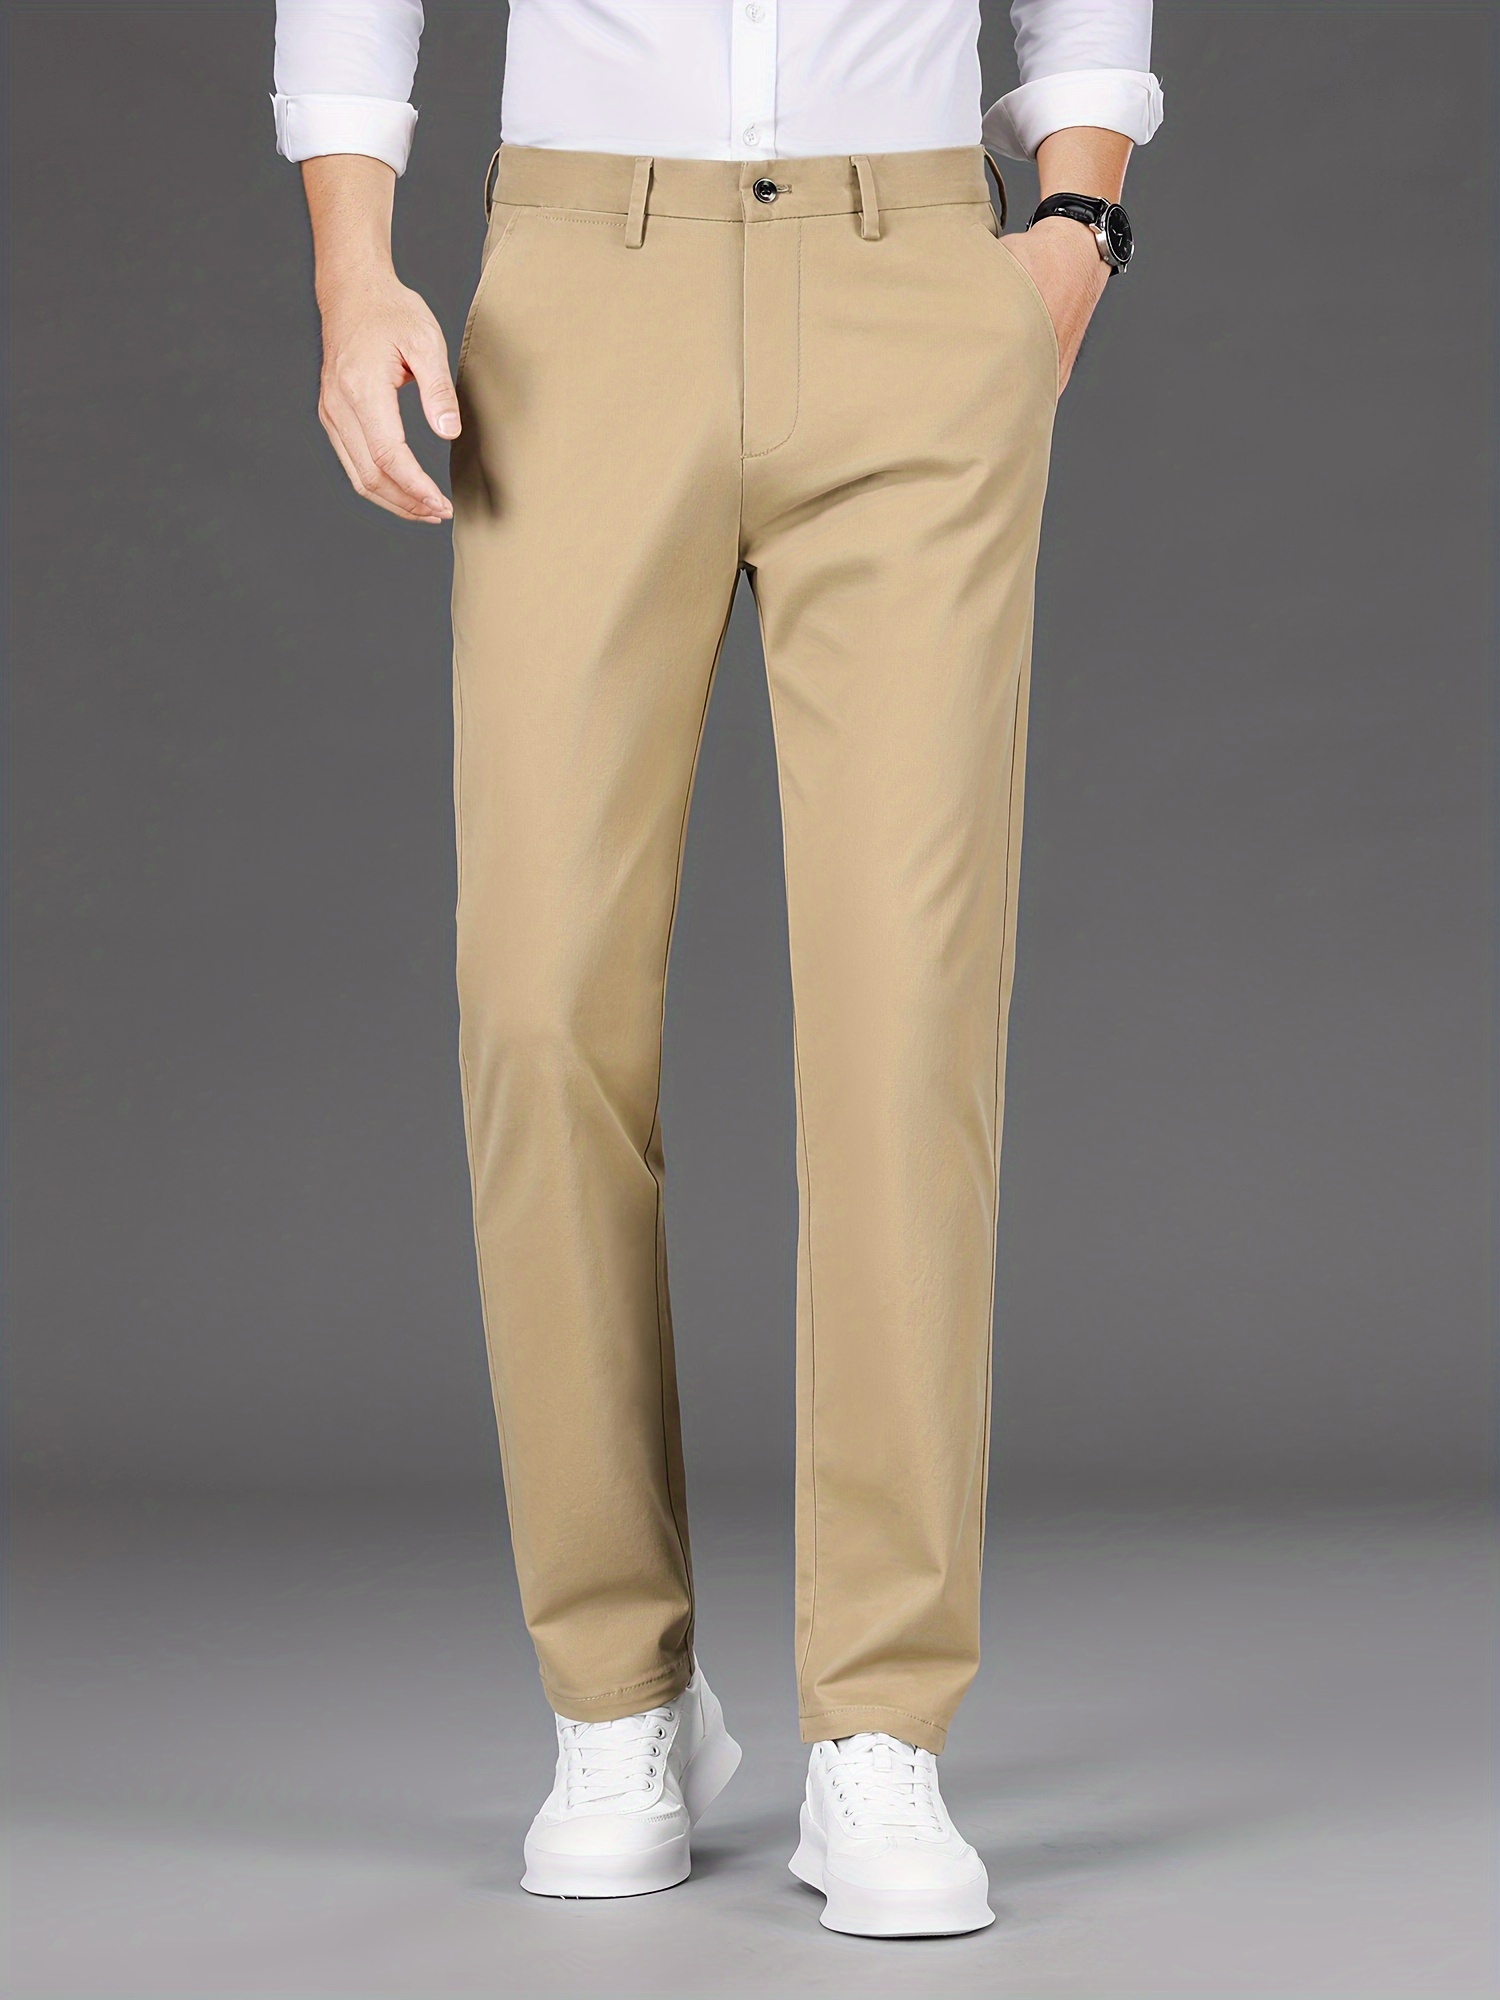 Cotton-blend pants